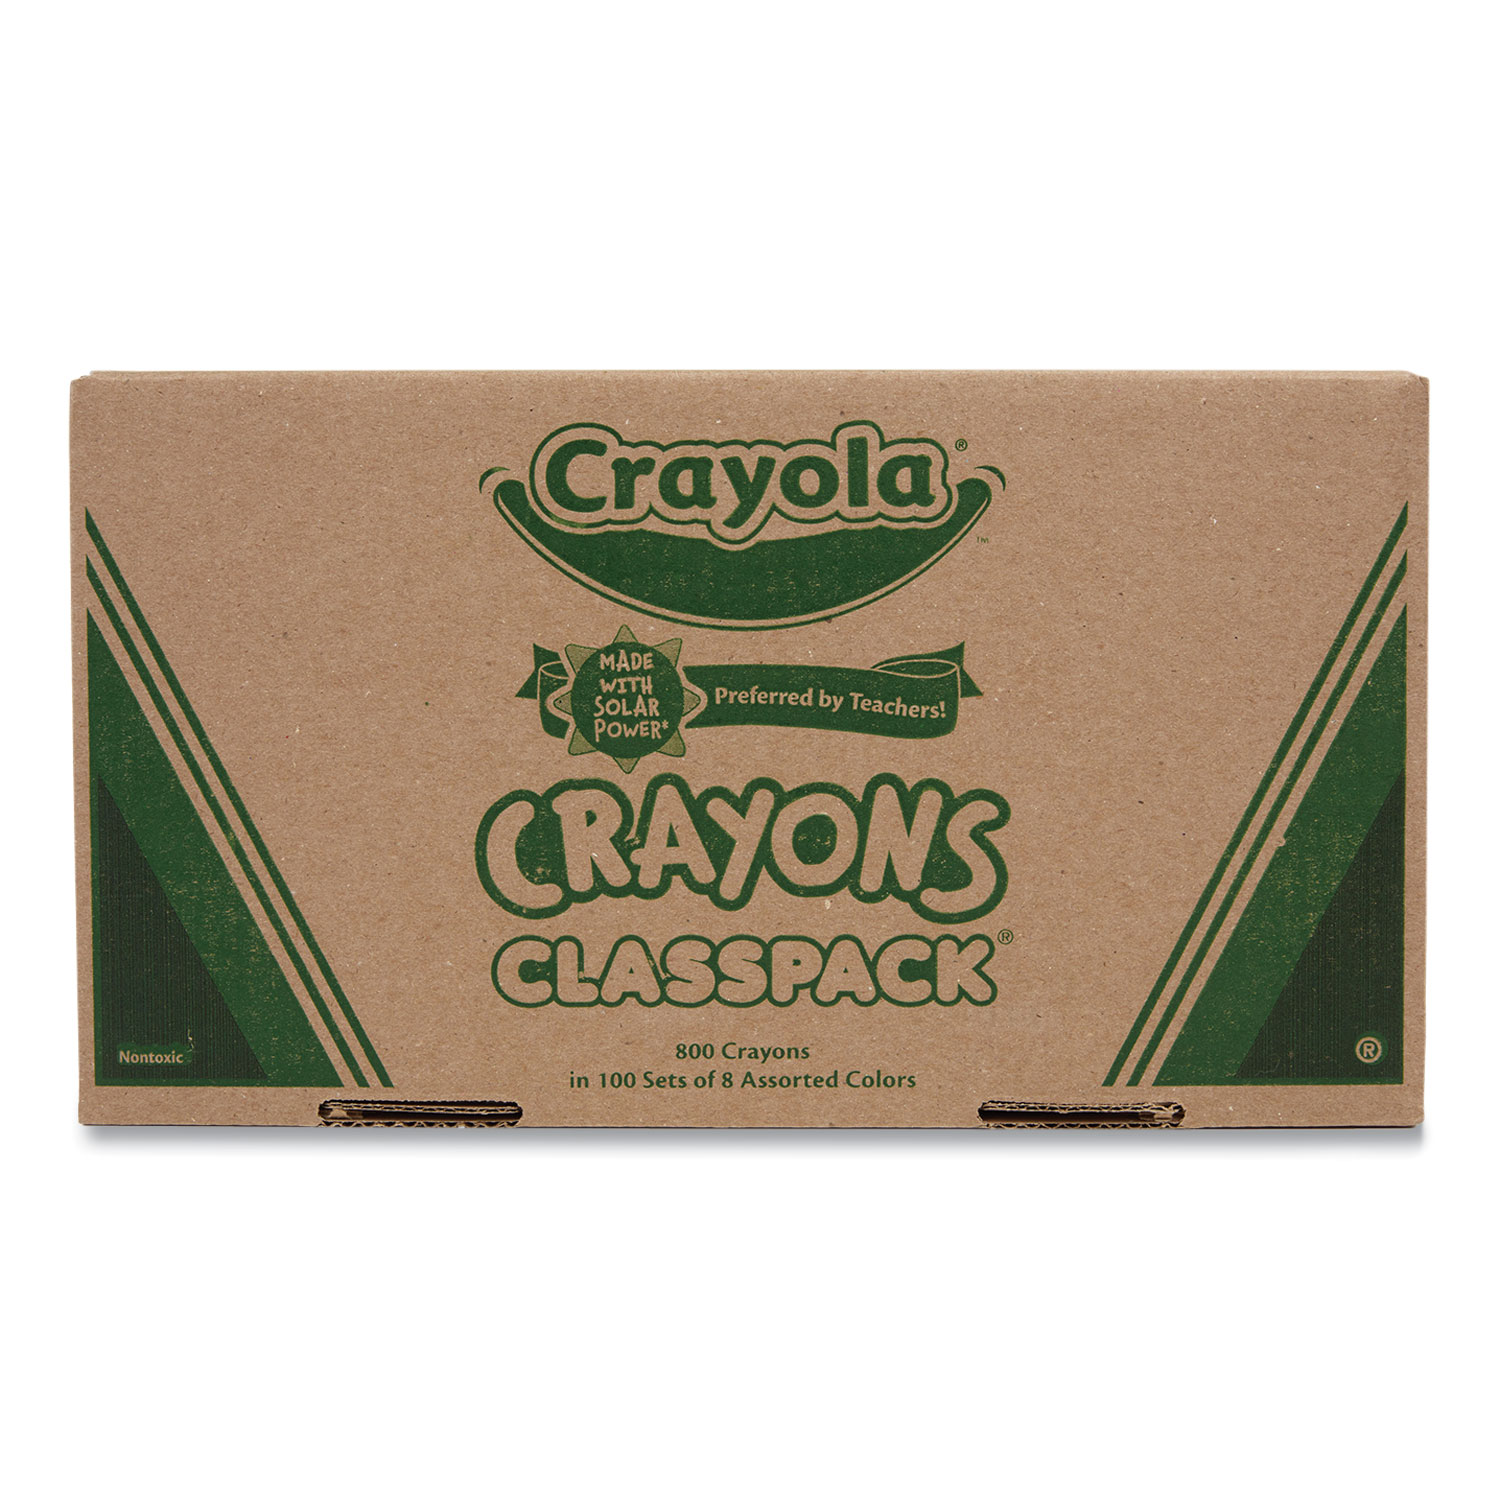 Crayola Crayon Classpack, School Supplies, 16 Colors (50 Each